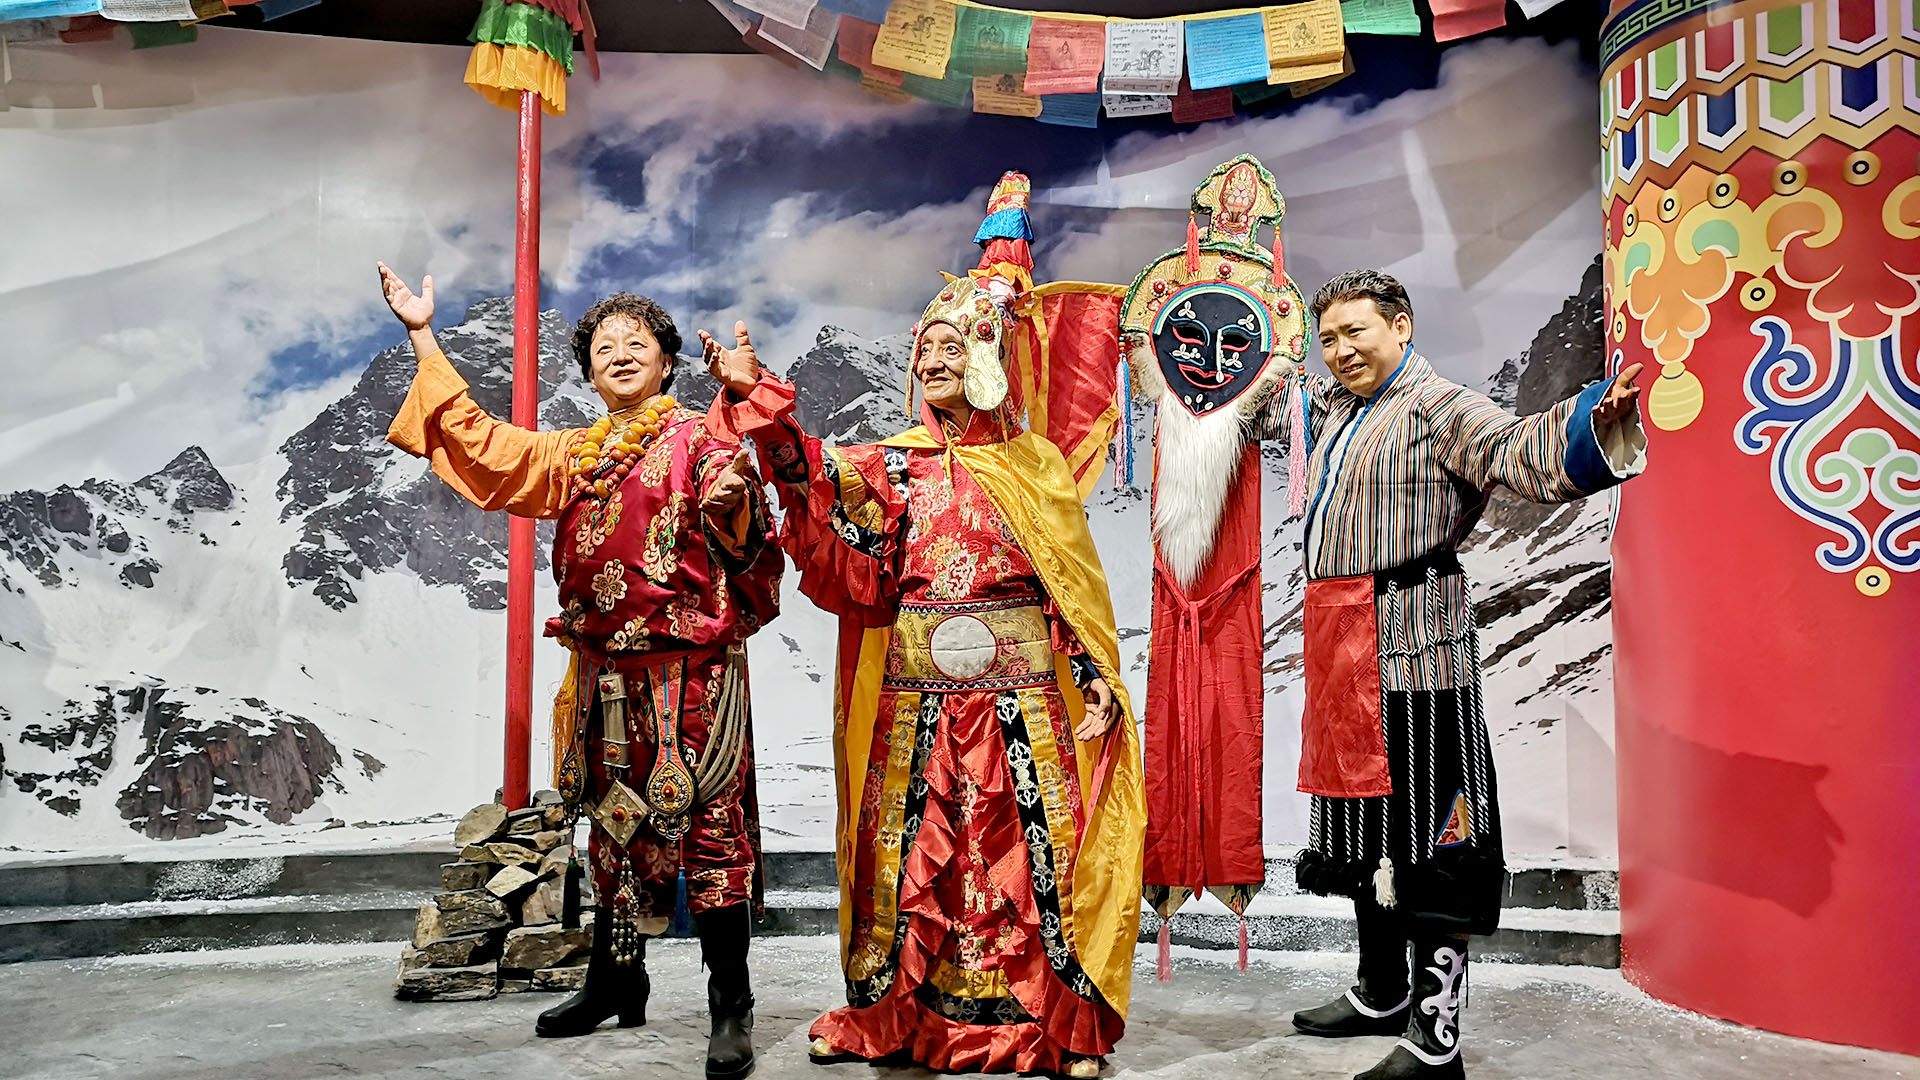 Weimukailai Tibet Wax Музей